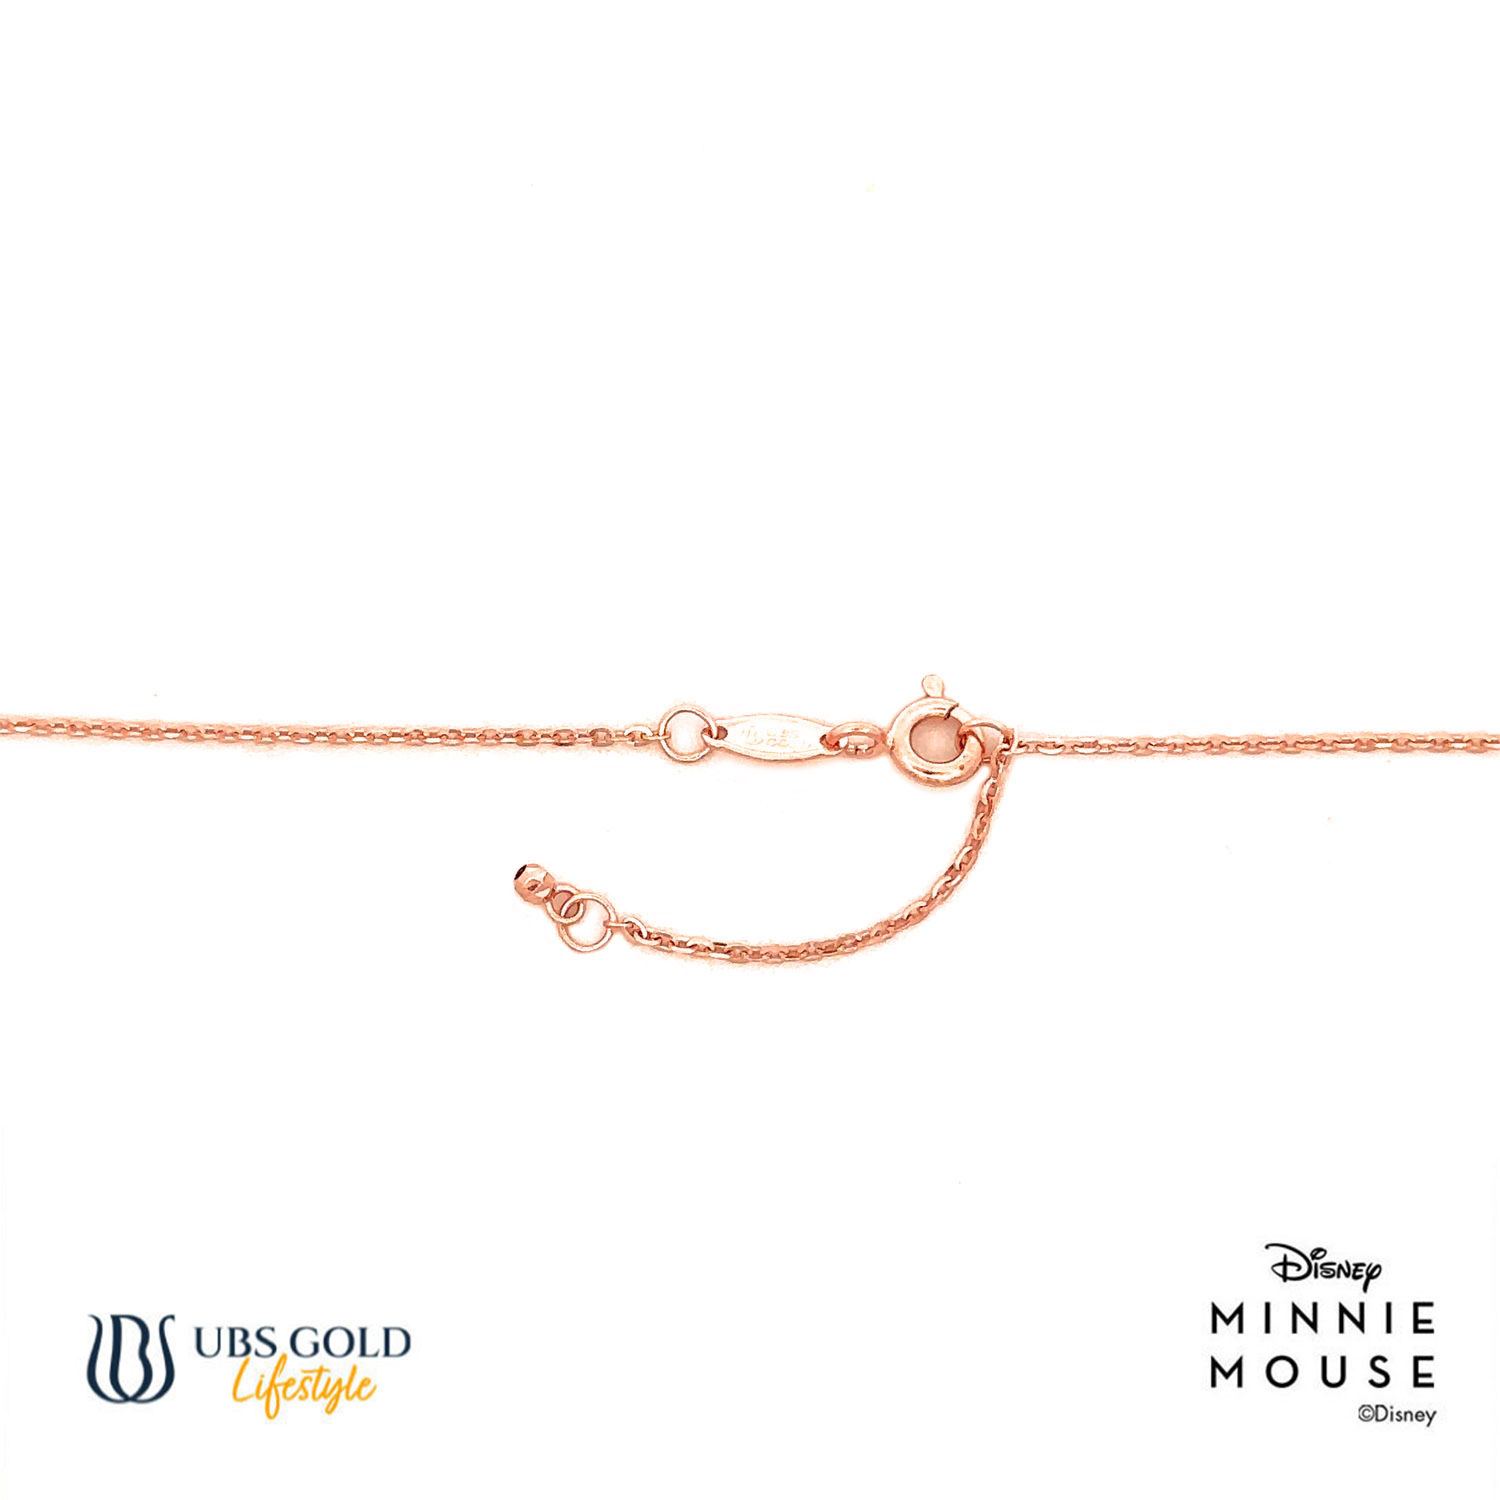 UBS Gold Kalung Emas Disney Minnie Mouse - Kky0487 - 17K